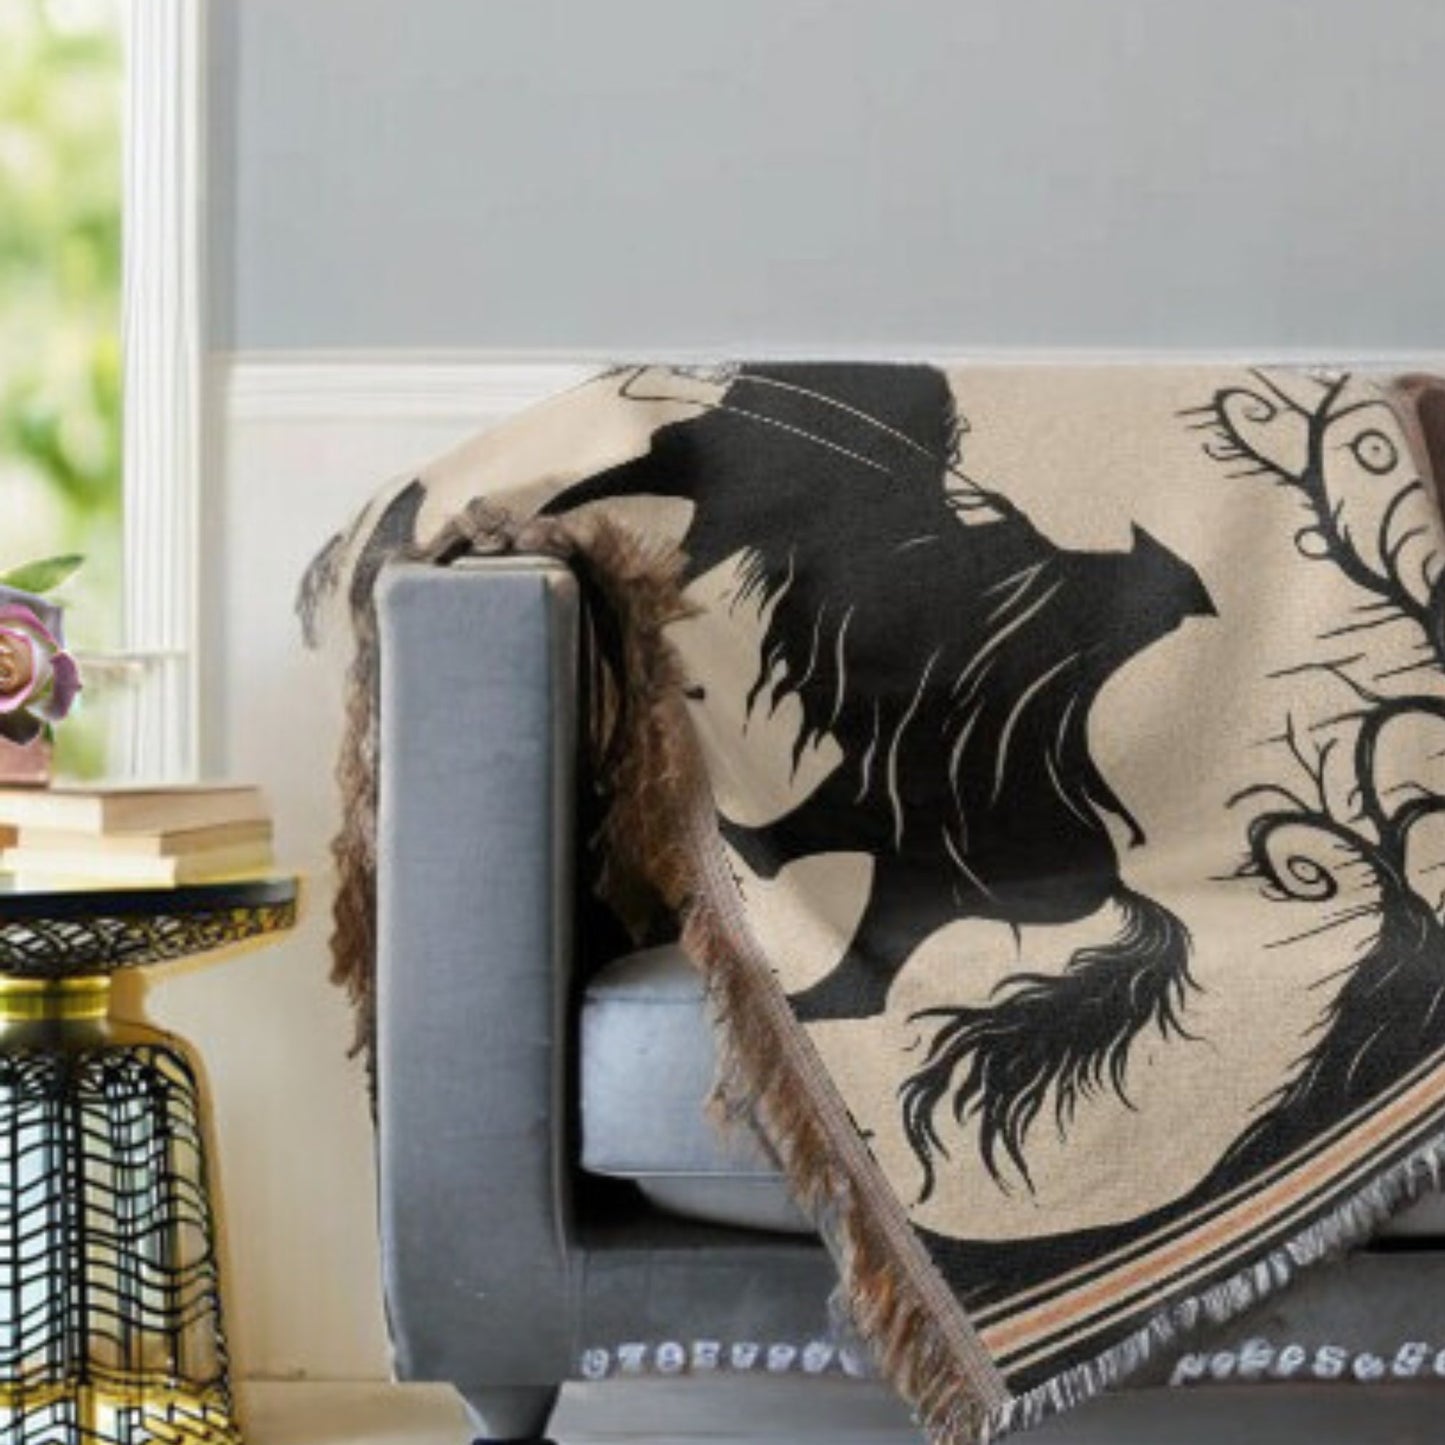 Headless Horseman Woven Blanket Tapestry ThrowVTZdesigns52x37 inchPhotoblanketBlanketsforest